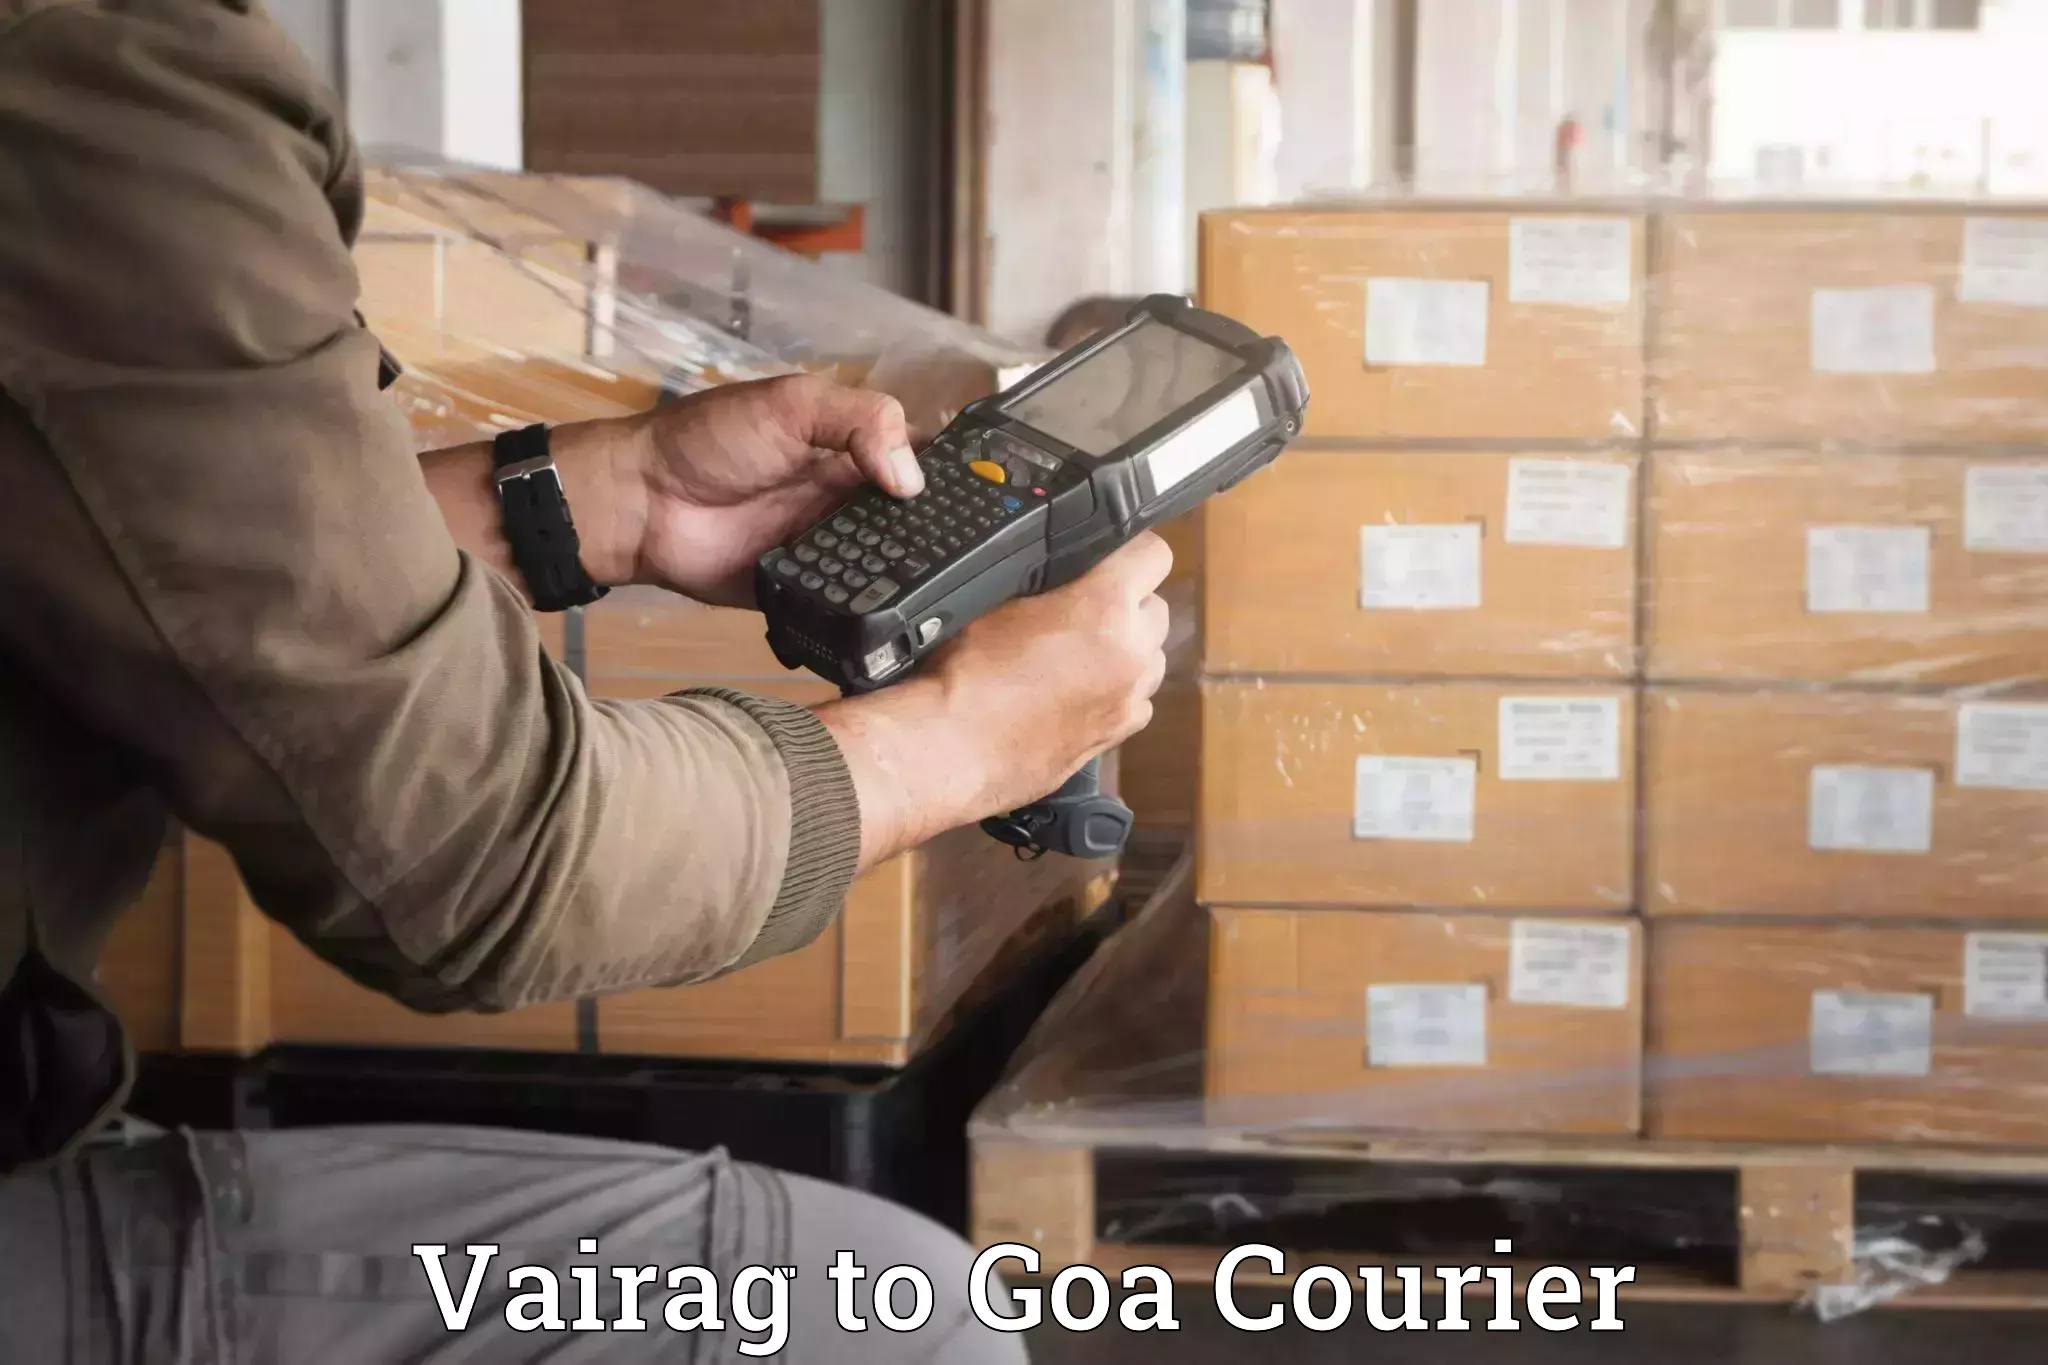 Luggage dispatch service Vairag to Goa